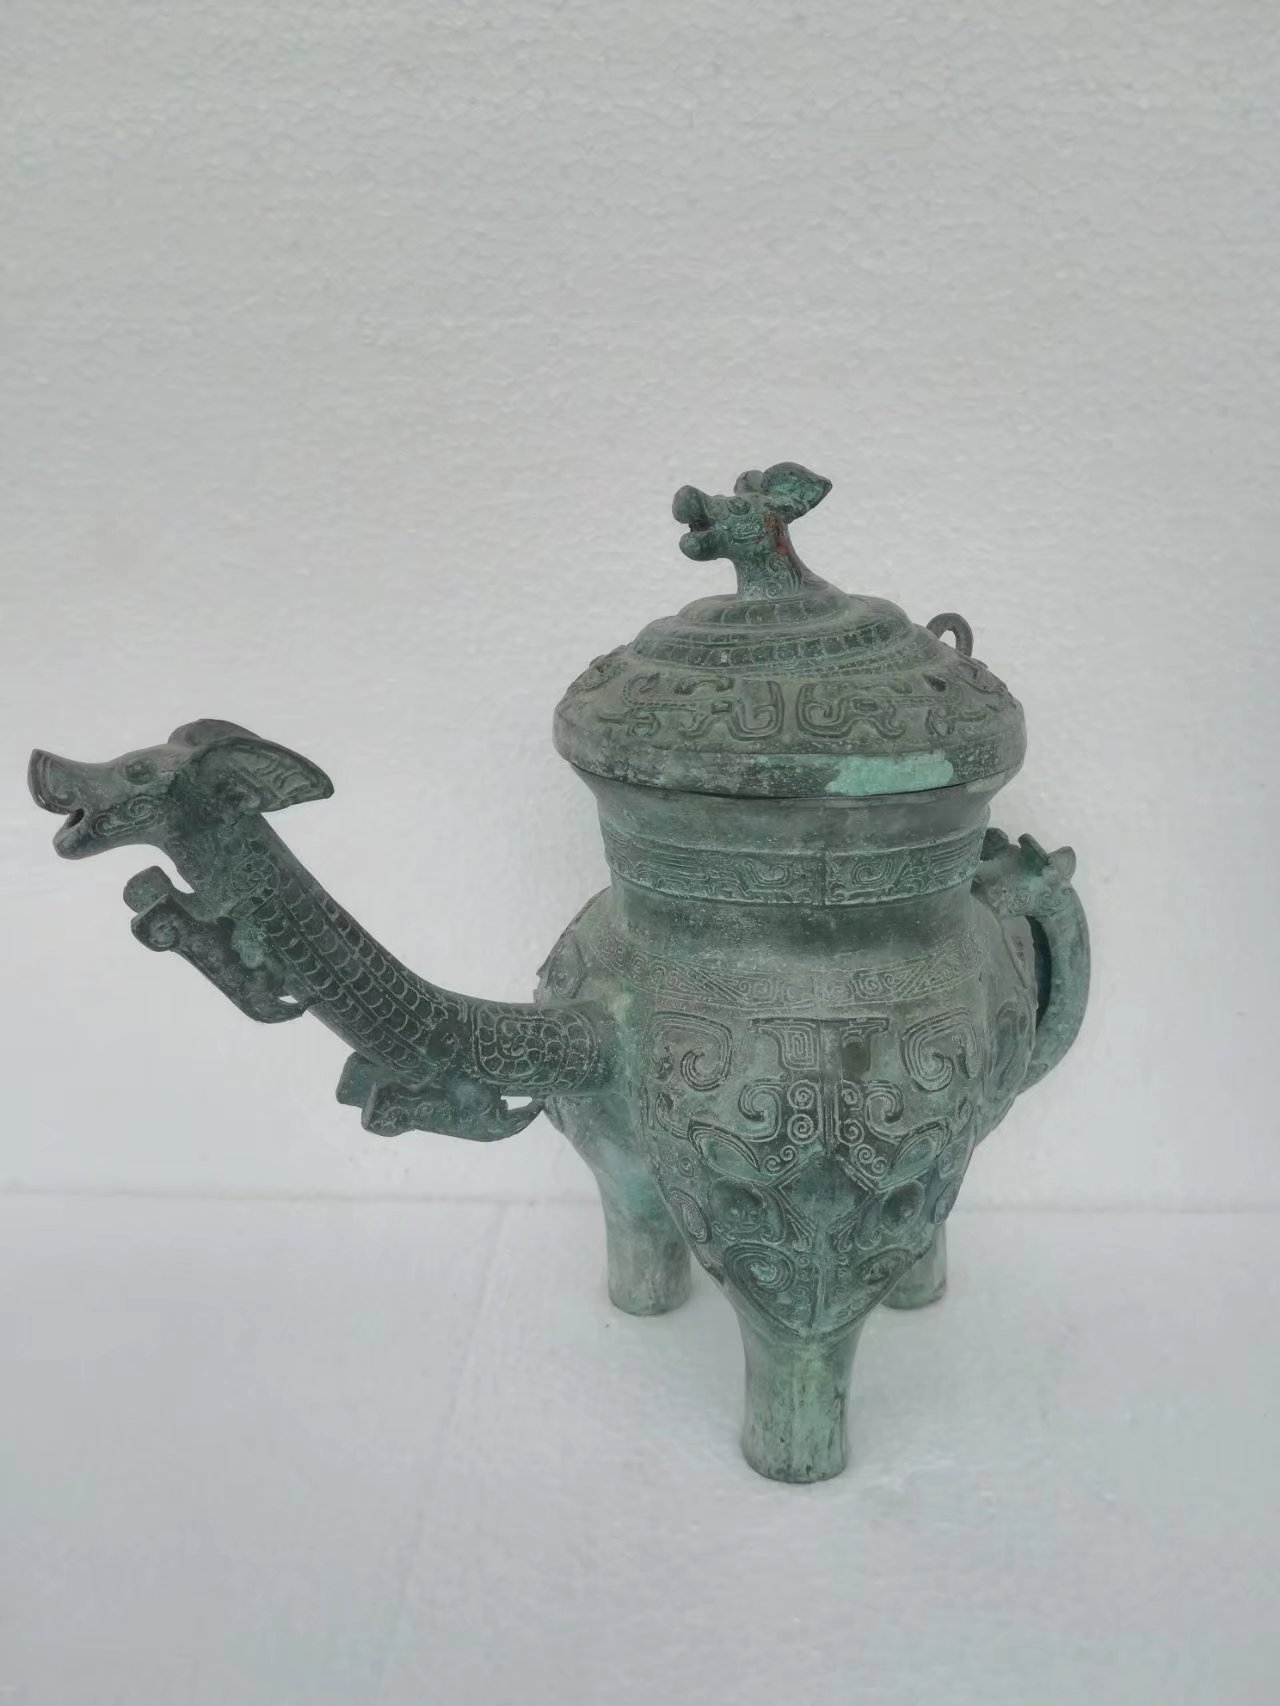 兽面纹龙流盉它盉凤盖盉青铜器古玩收藏品 金属工艺品4